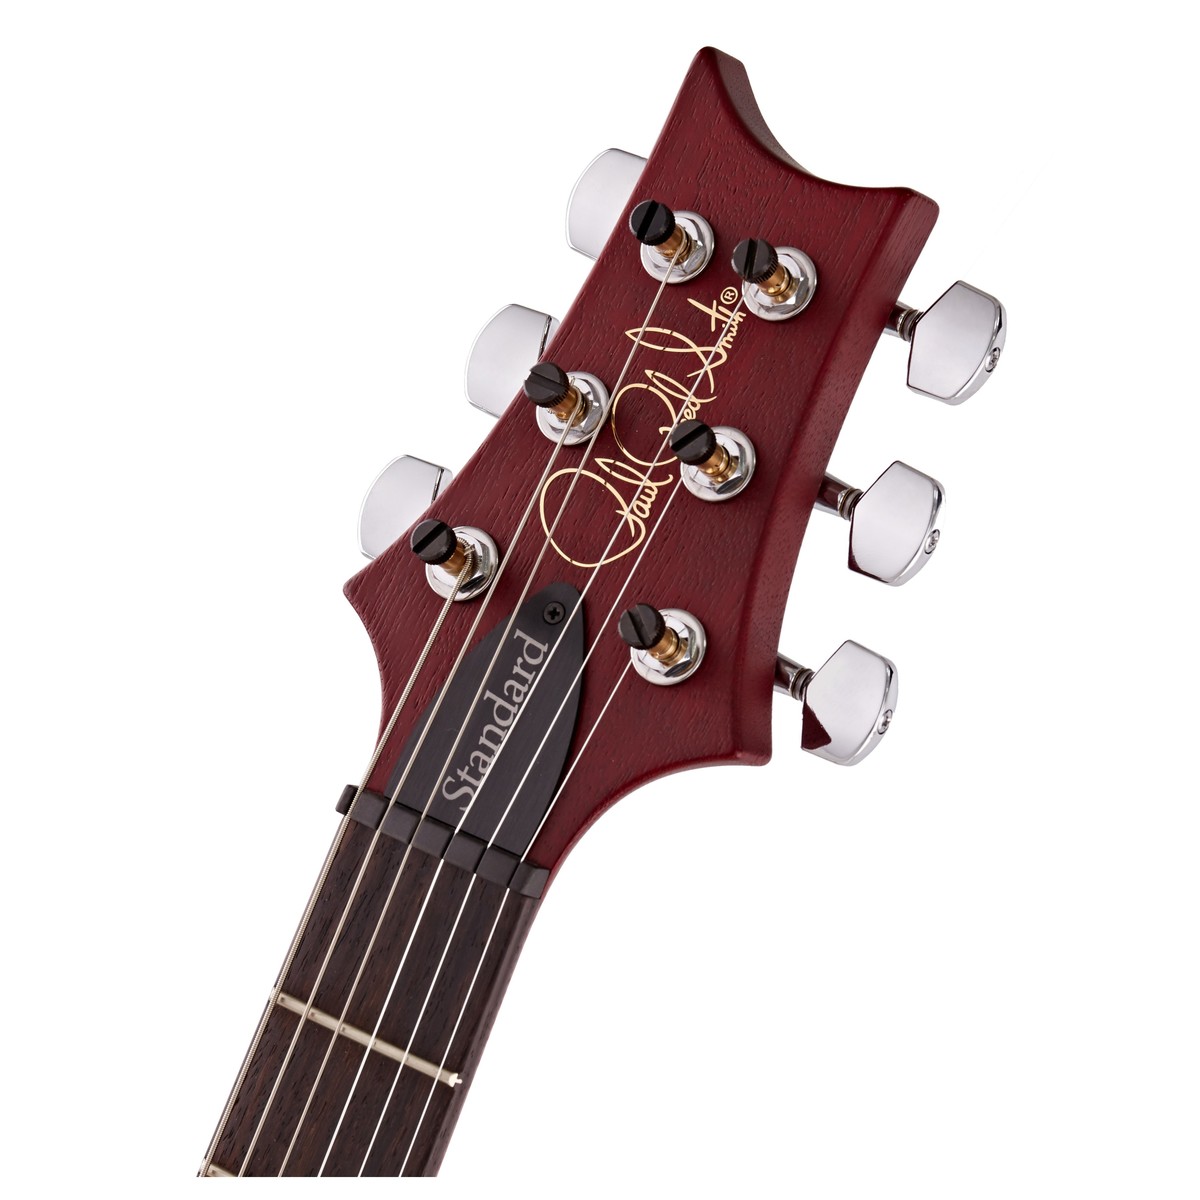 Prs S2 Standard 22 Satin Usa 2h Trem Rw - Vintage Cherry - Guitarra eléctrica de doble corte - Variation 4